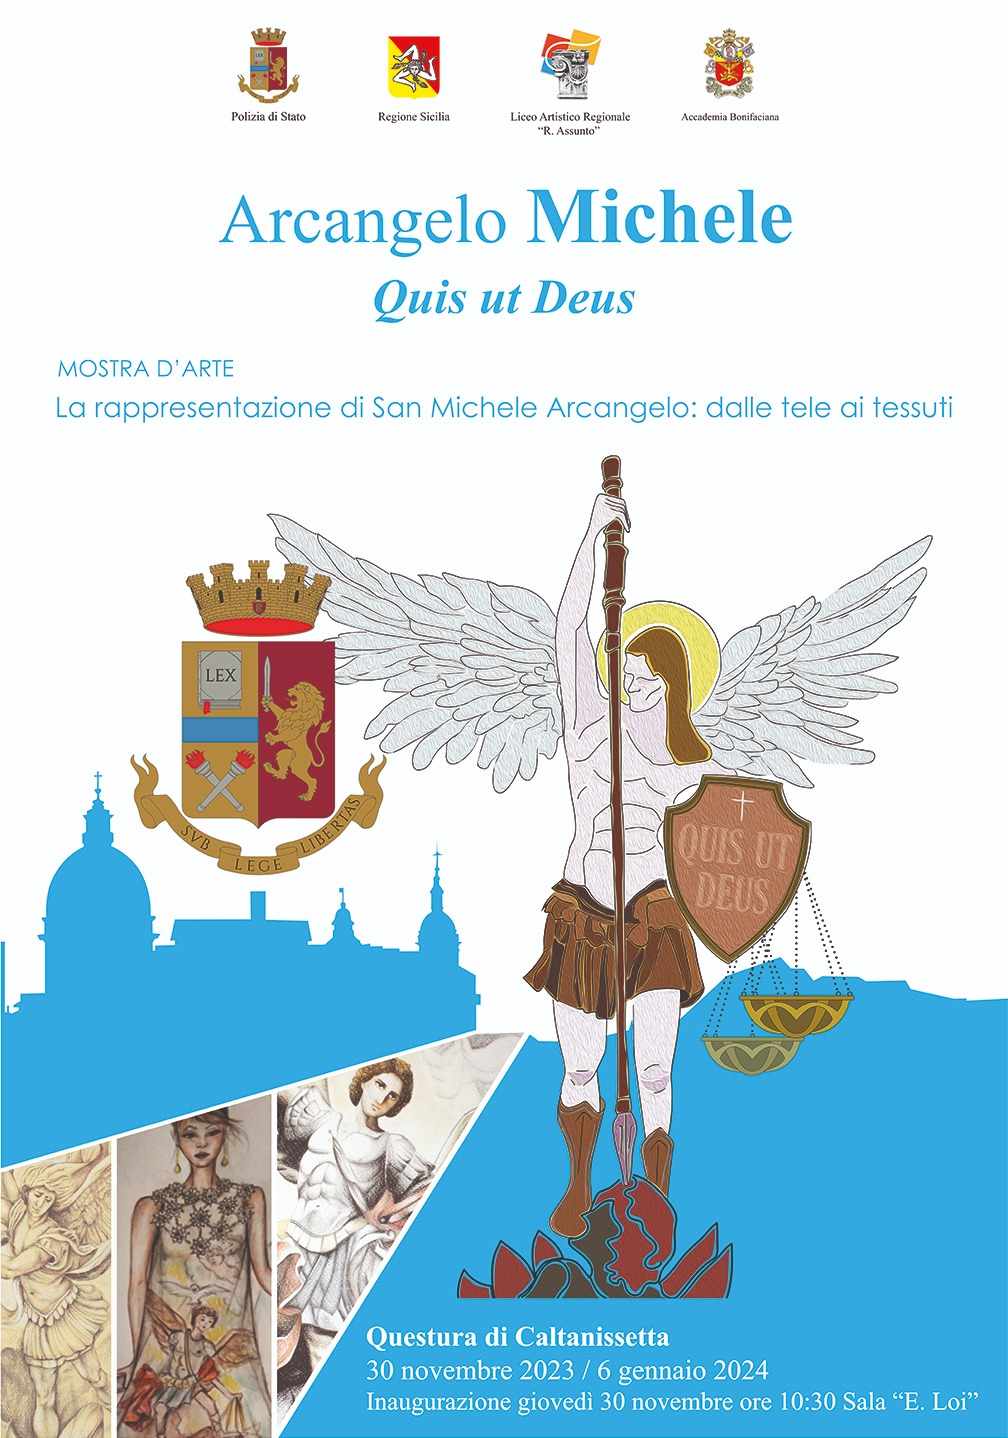 Caltanissetta, presentazione in Questura della mostra dal titolo "Quis ut Deus" – “La rappresentazione di San Michele Arcangelo: dalle tele ai tessuti”.